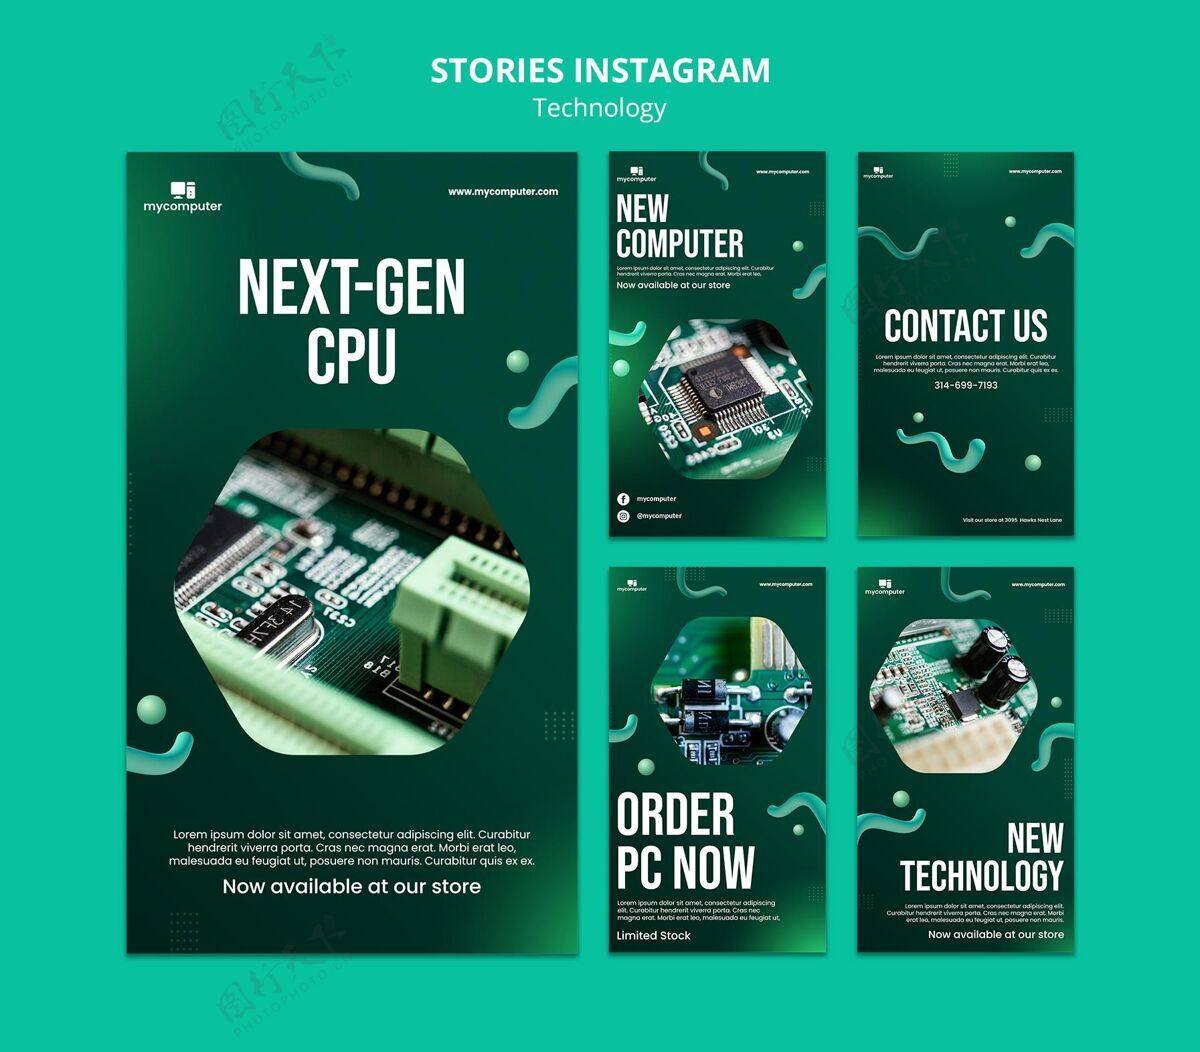 Instagram下一代cpuinstagram存储库电脑社交媒体设备